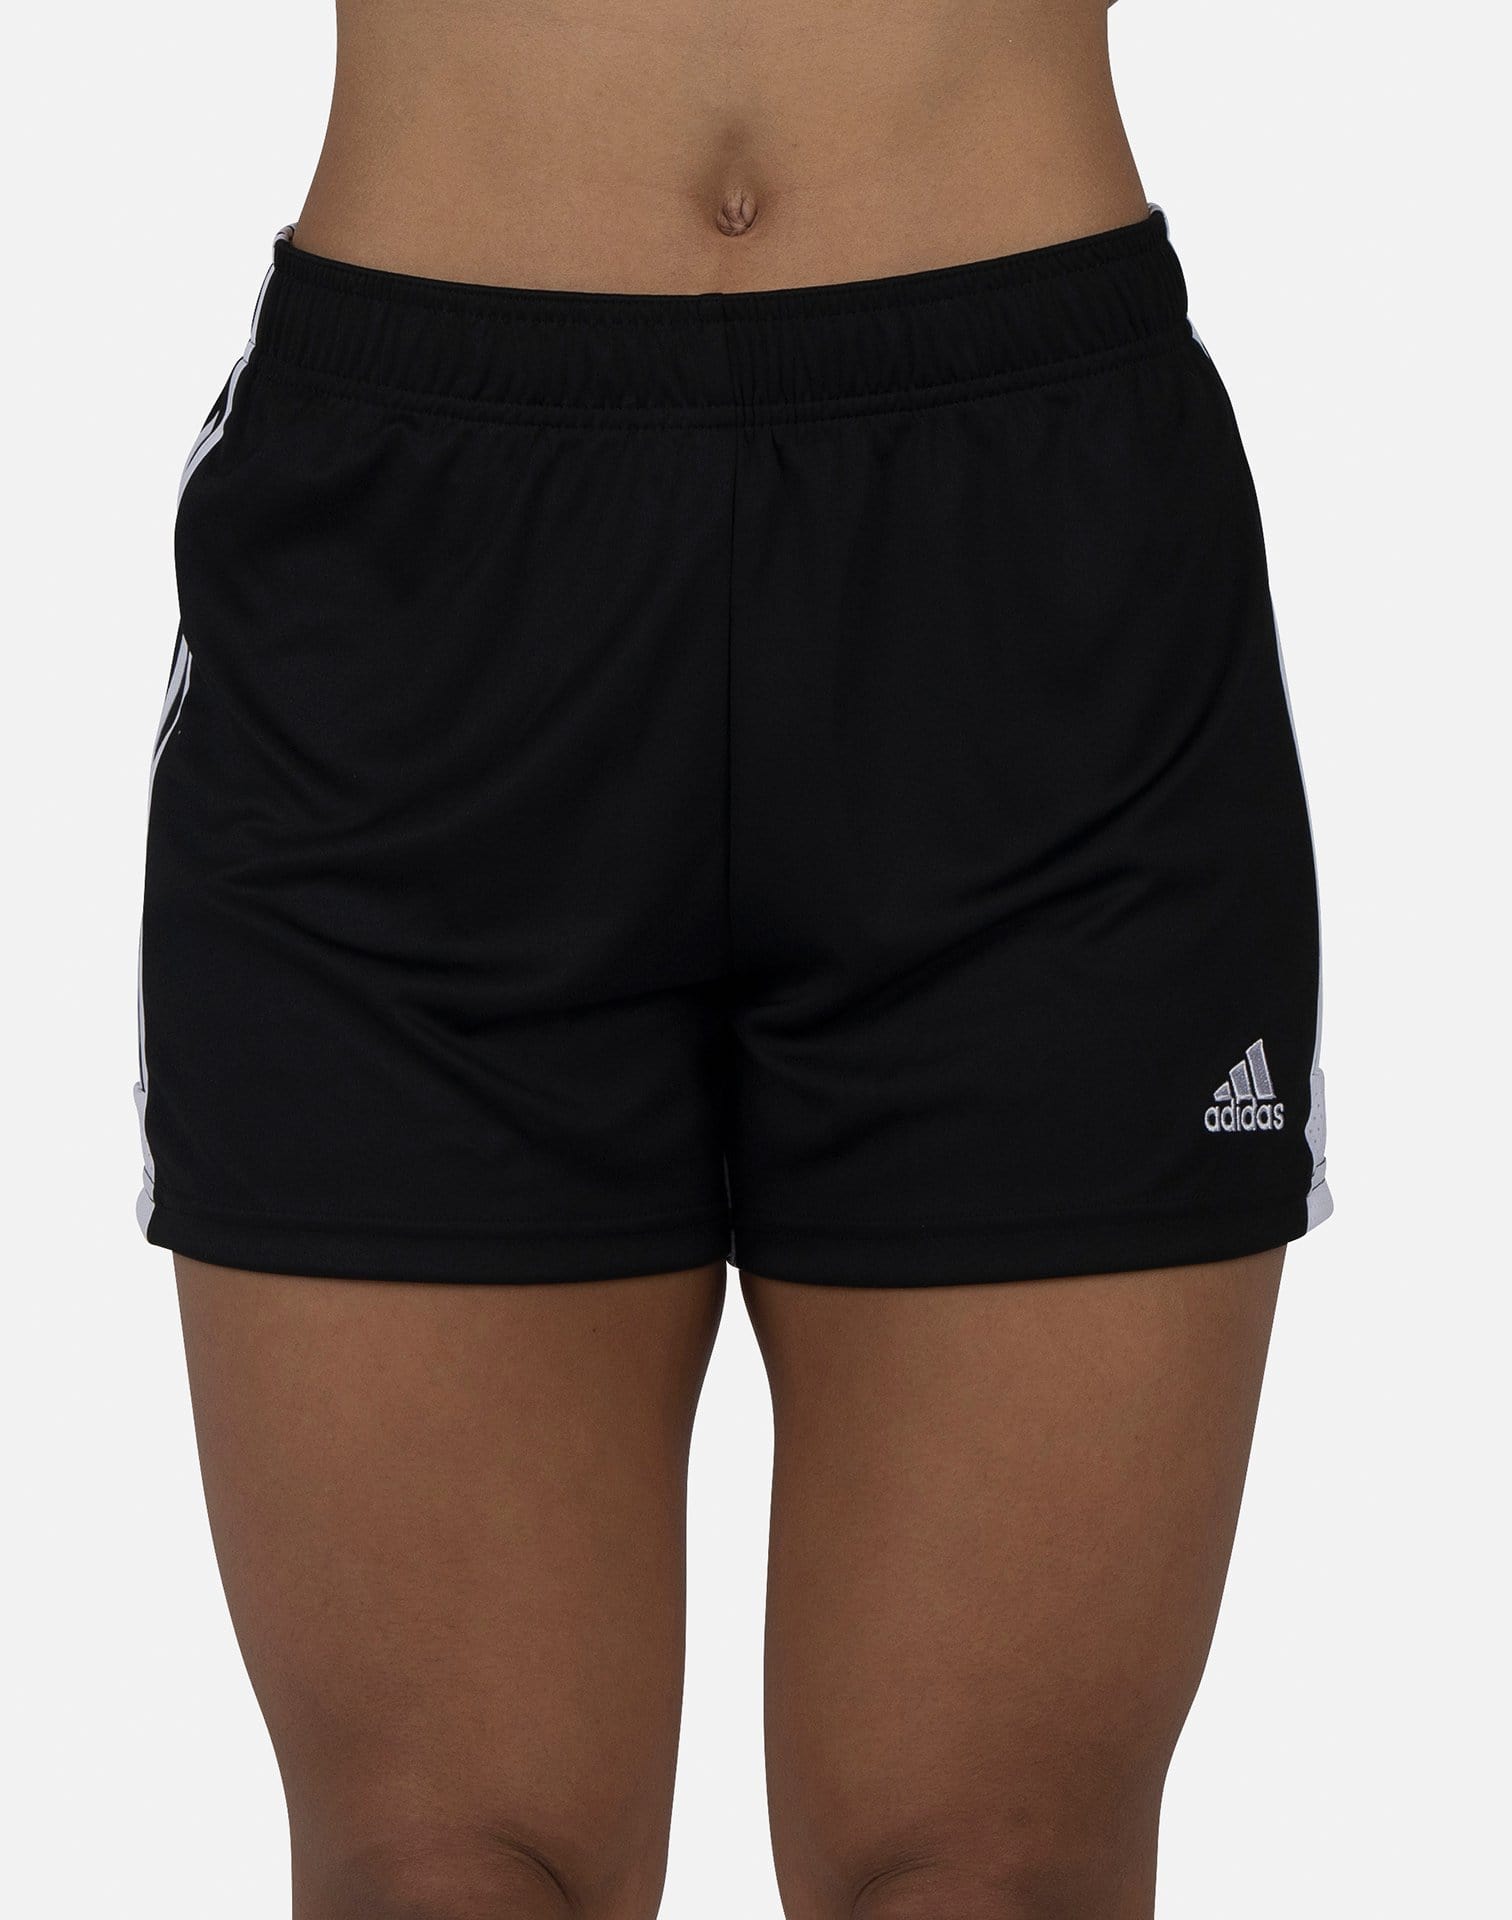 women's tastigo 19 shorts